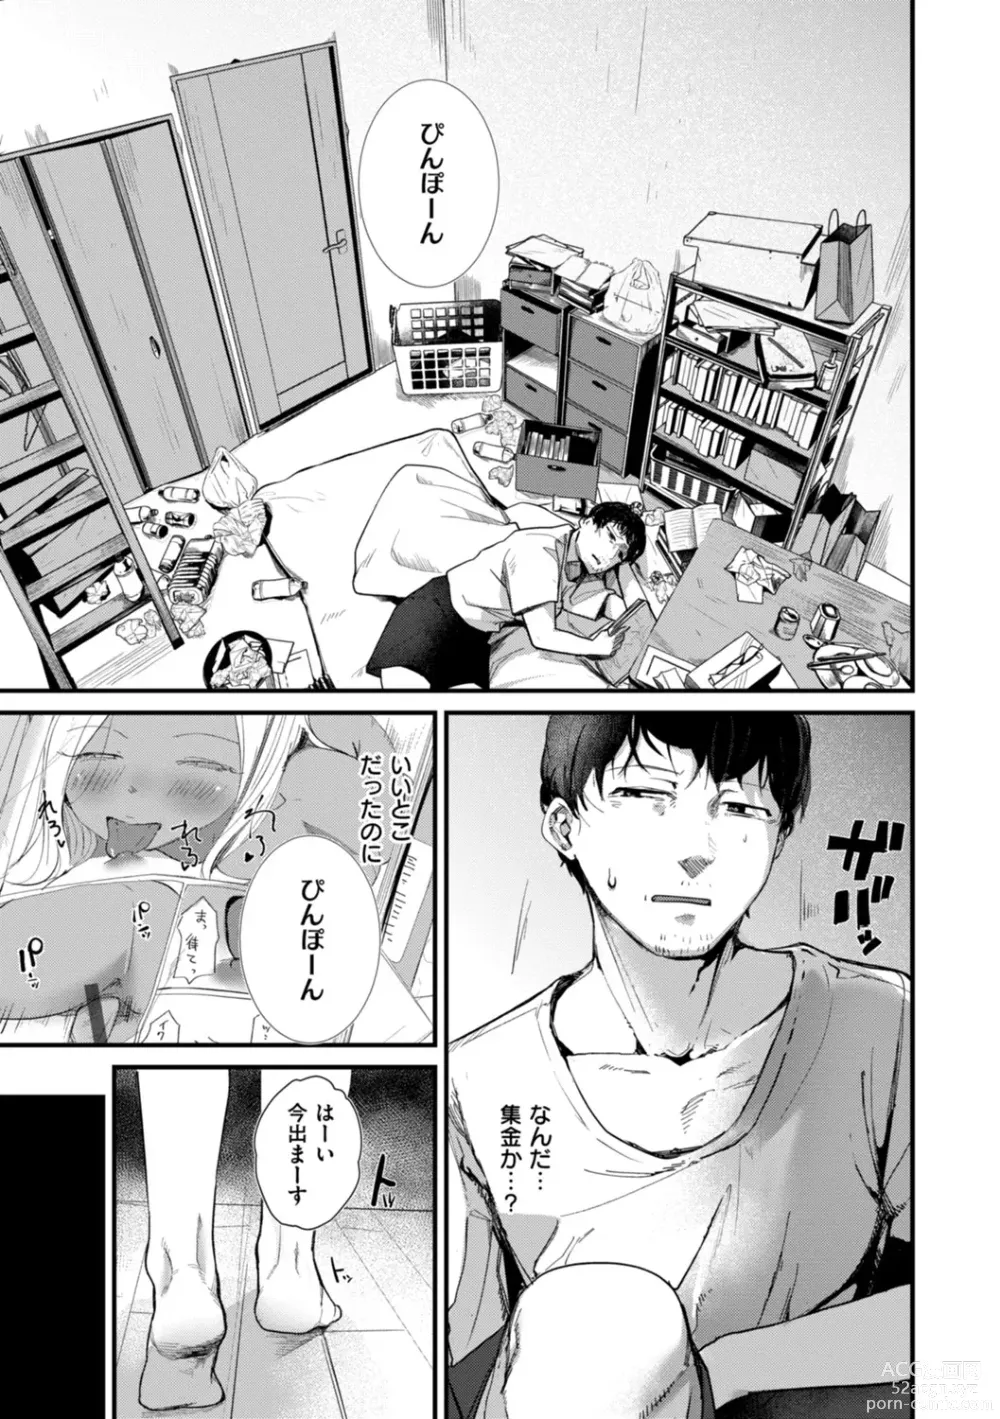 Page 5 of manga Kiteretsu Porno Zenshuu